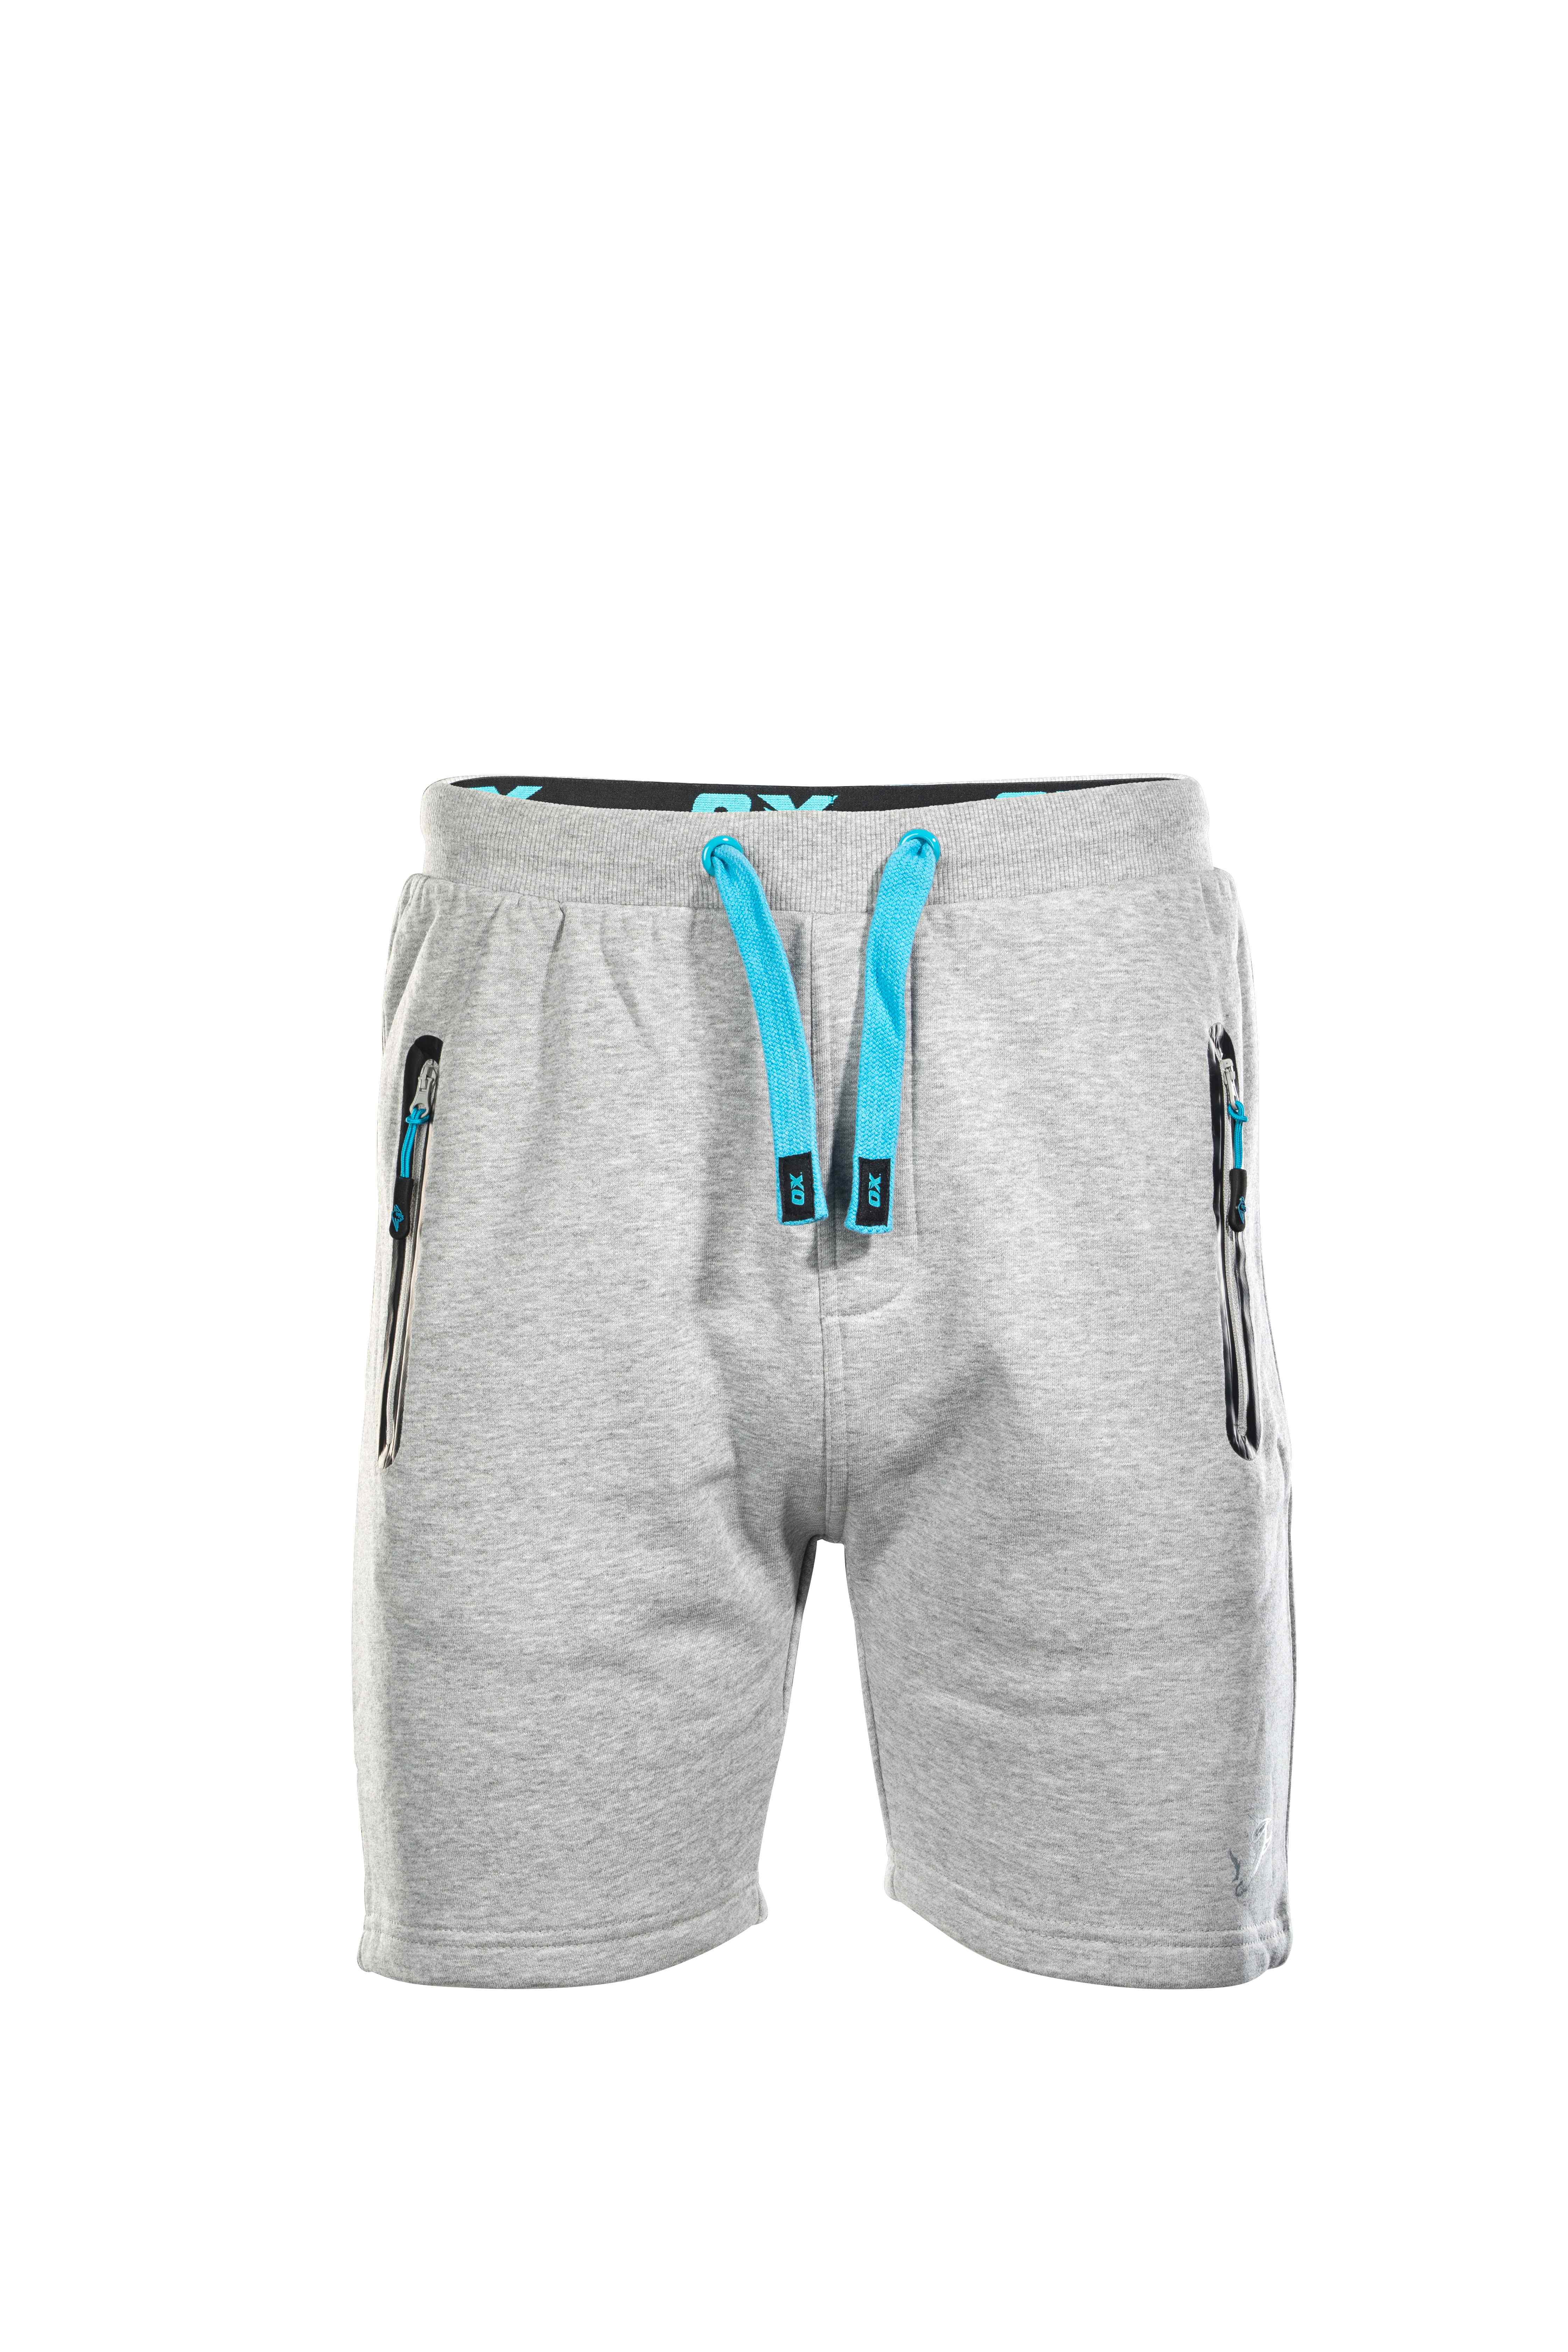 OX Jogger Shorts - Grey - 40